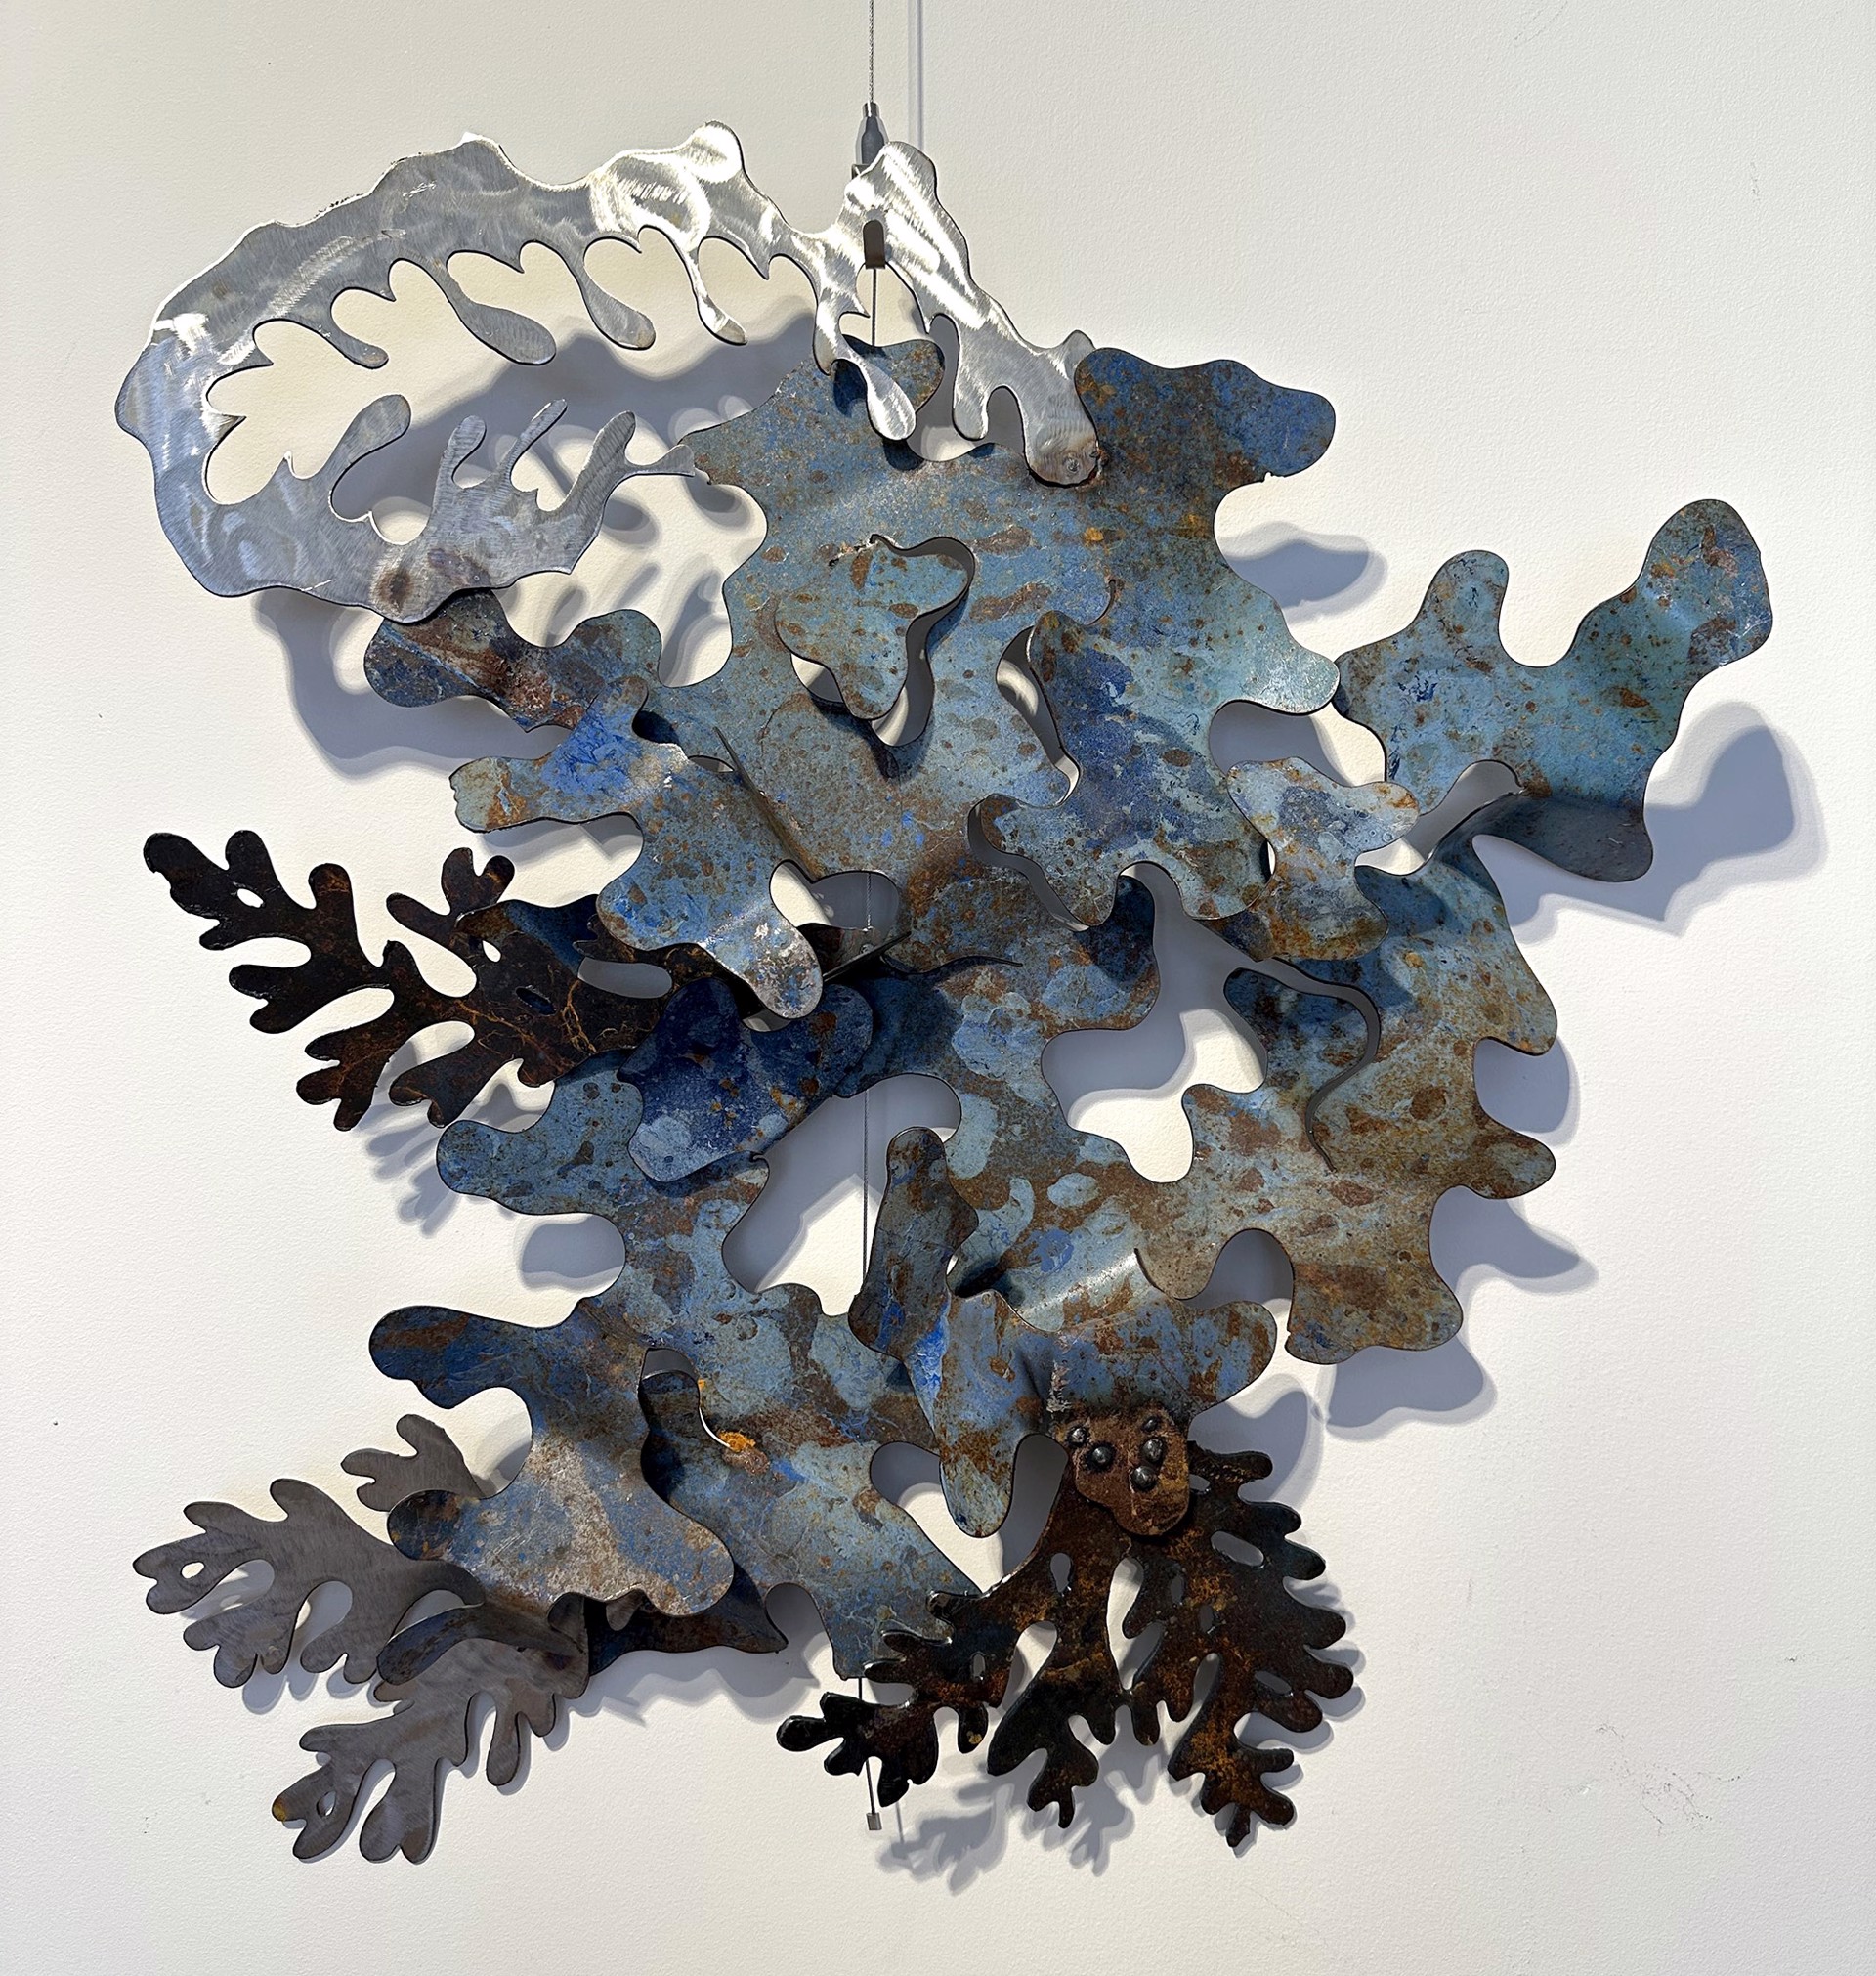 Lichen Composition II by Garrett Gilbart